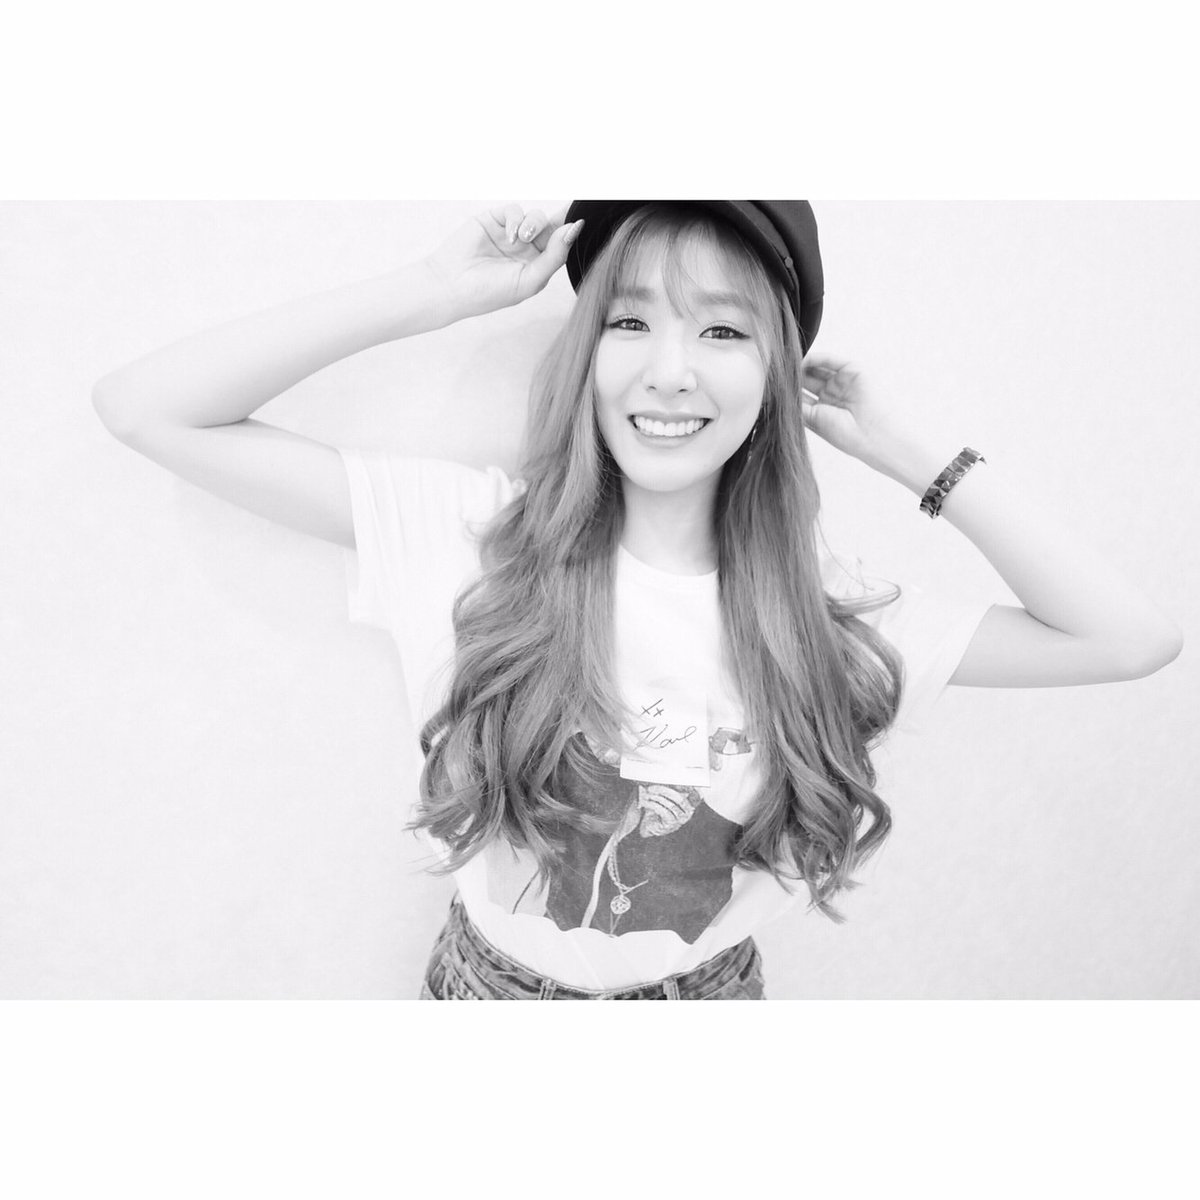 [OTHER][17-09-2014]Tiffany gia nhập mạng xã hội Instagram + Selca mới của cô - Page 15 DFJw0_sUQAAuBa0